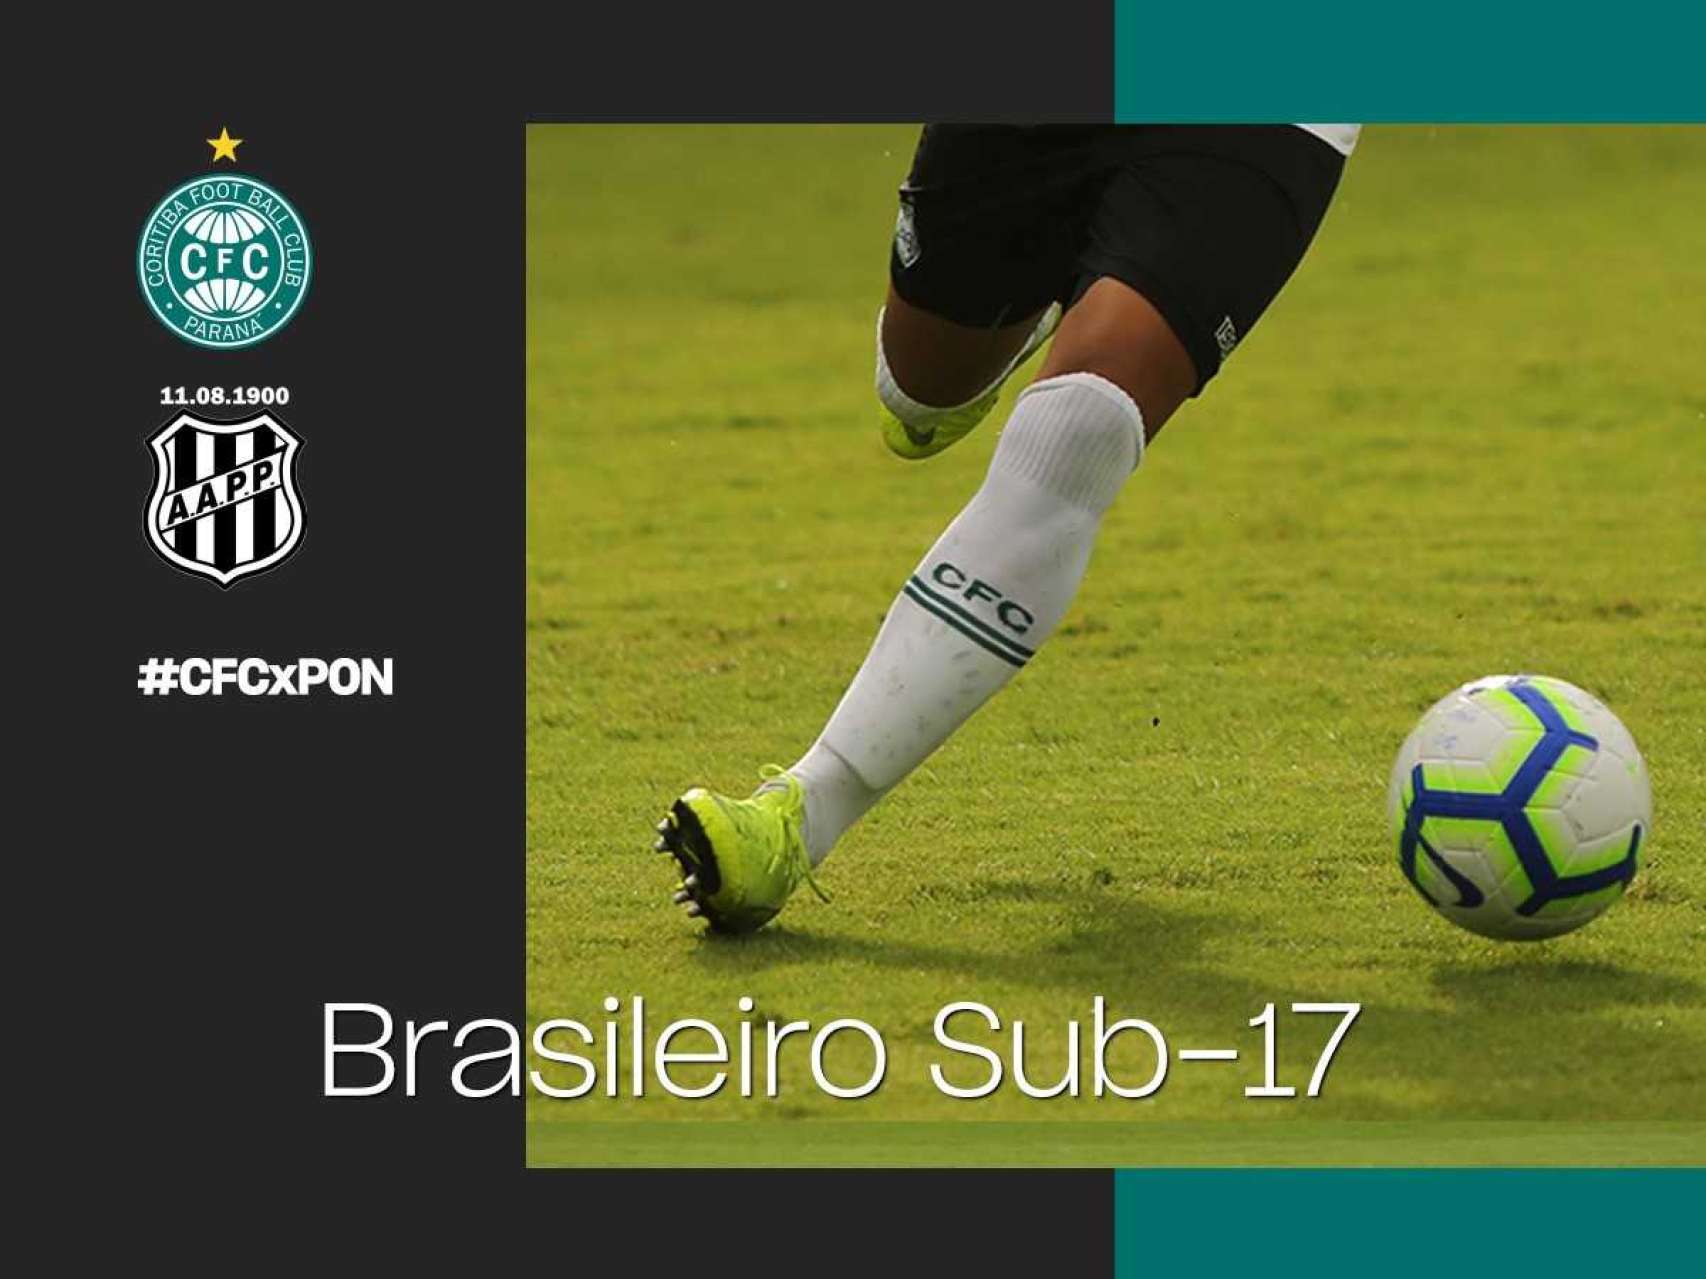 Coxa estreia no Brasileiro Sub-17 nesta quarta